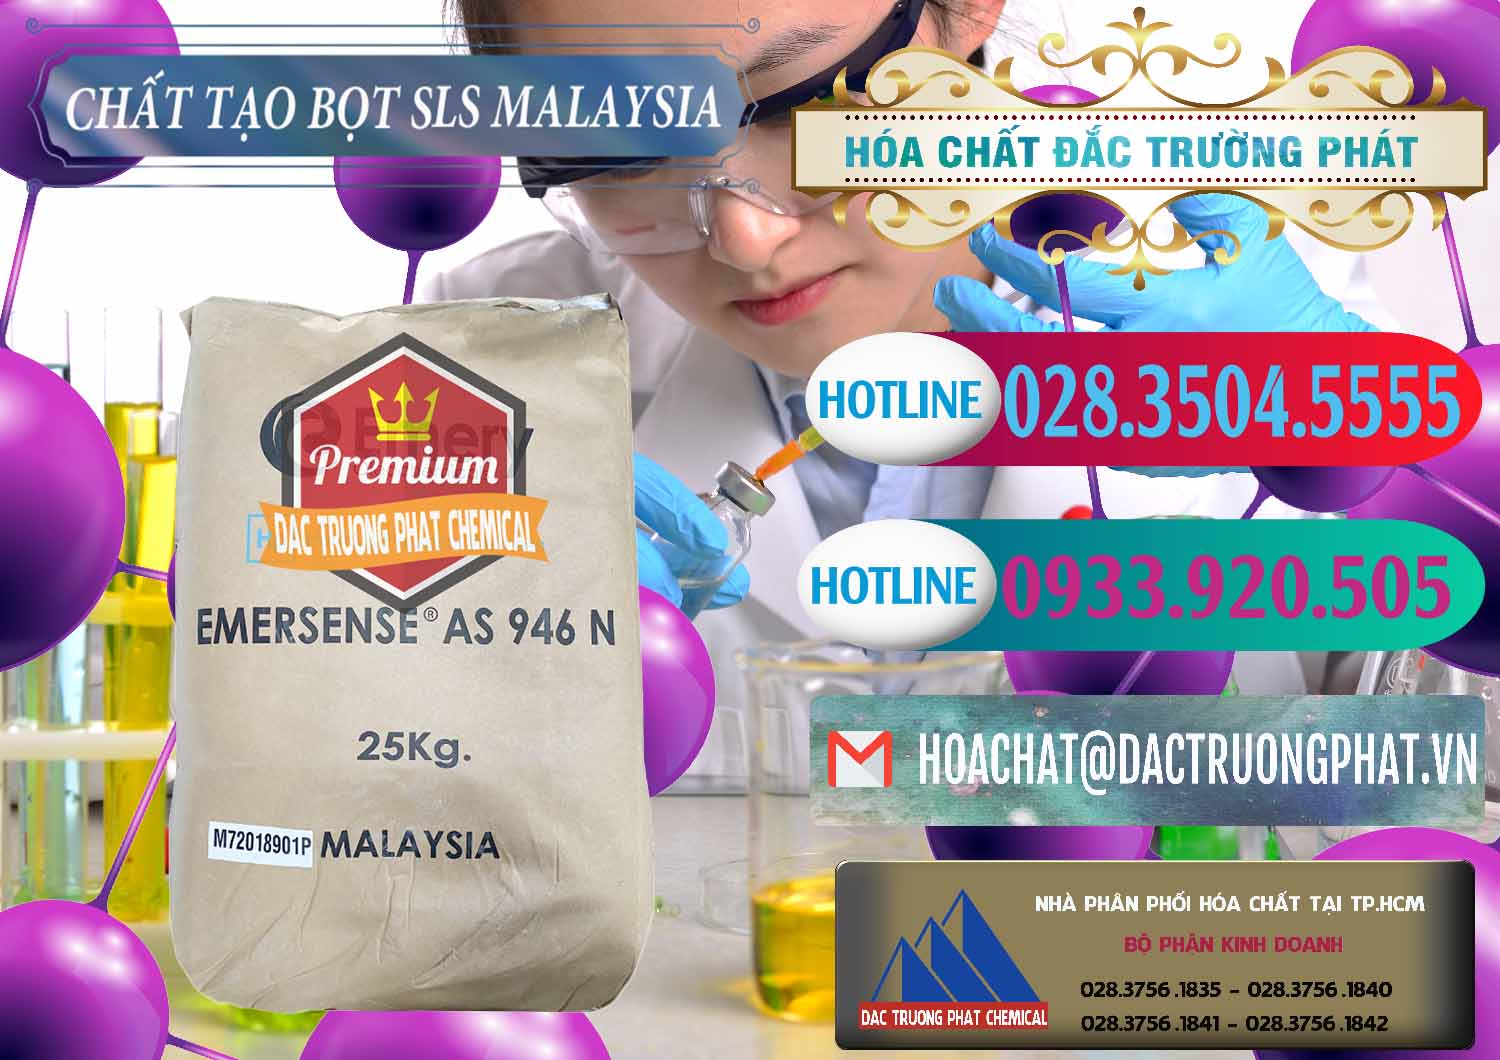 Nhà cung ứng _ bán Chất Tạo Bọt SLS Emery - Emersense AS 946N Mã Lai Malaysia - 0423 - Công ty bán & phân phối hóa chất tại TP.HCM - truongphat.vn